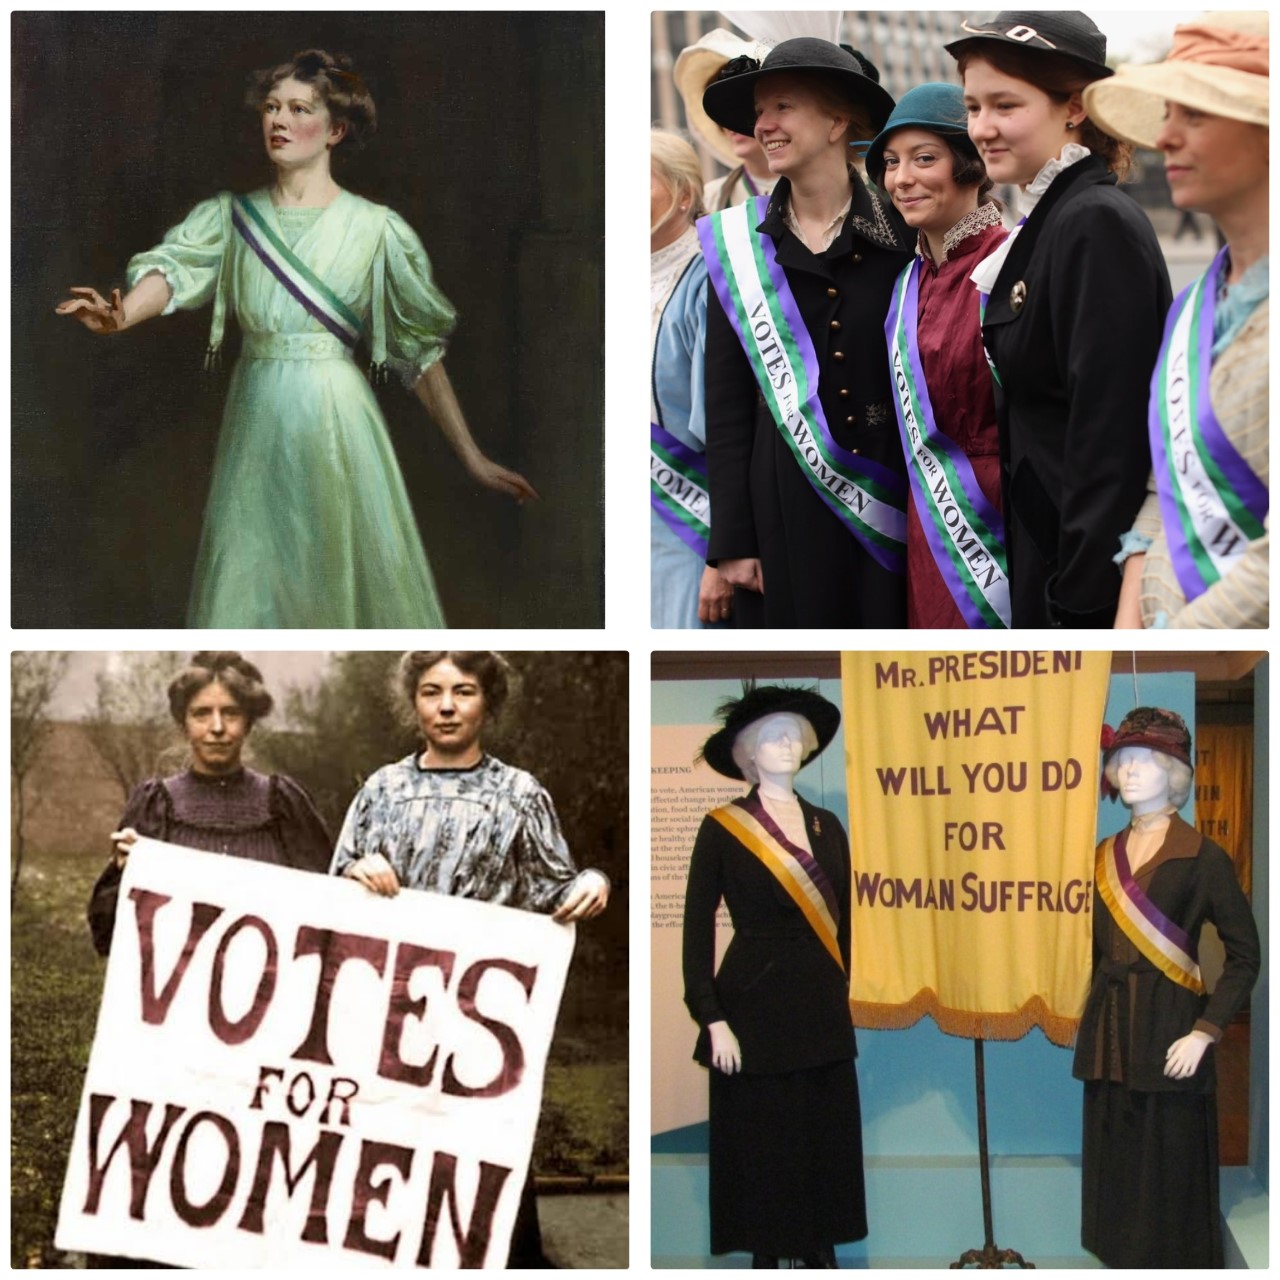 سنة 1900 استخدام الألوان للطالبة بحقوق المرأة